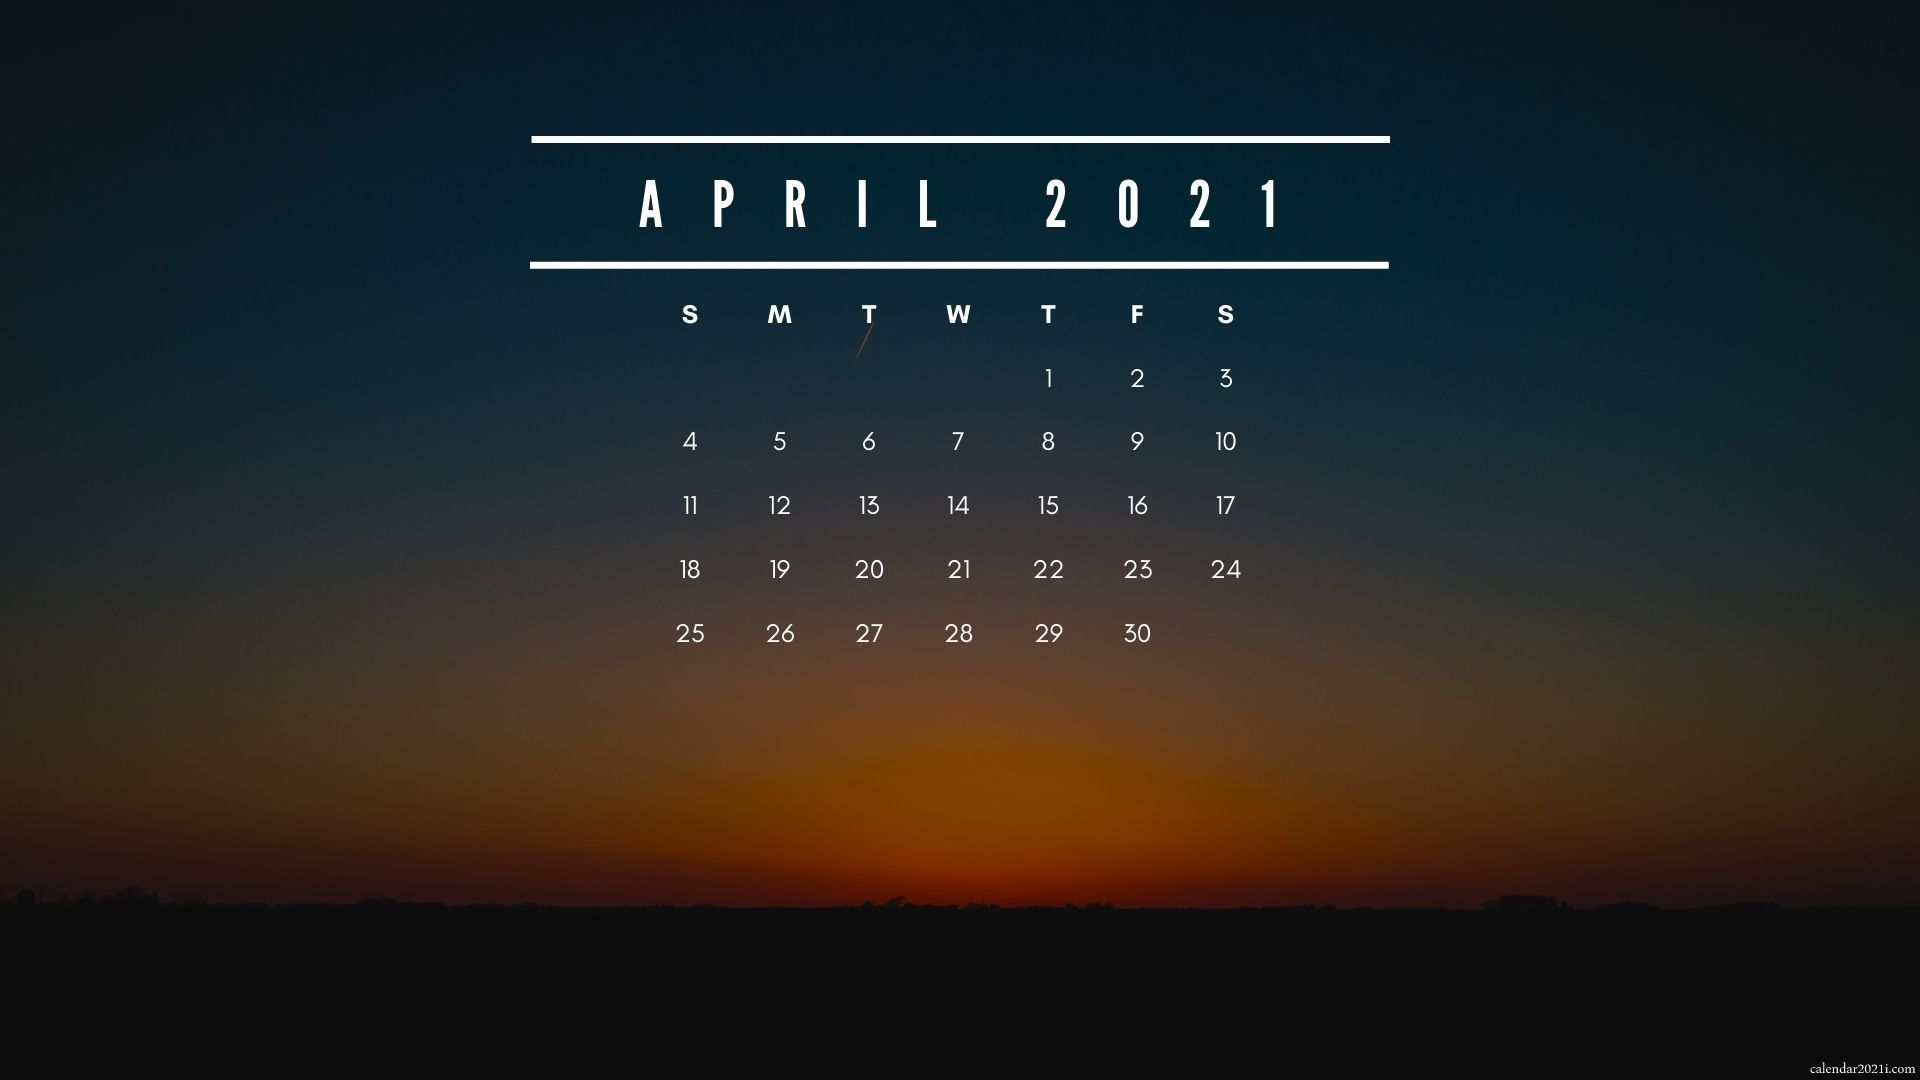 April 2021 Calendar Wallpapers - Wallpaper Cave